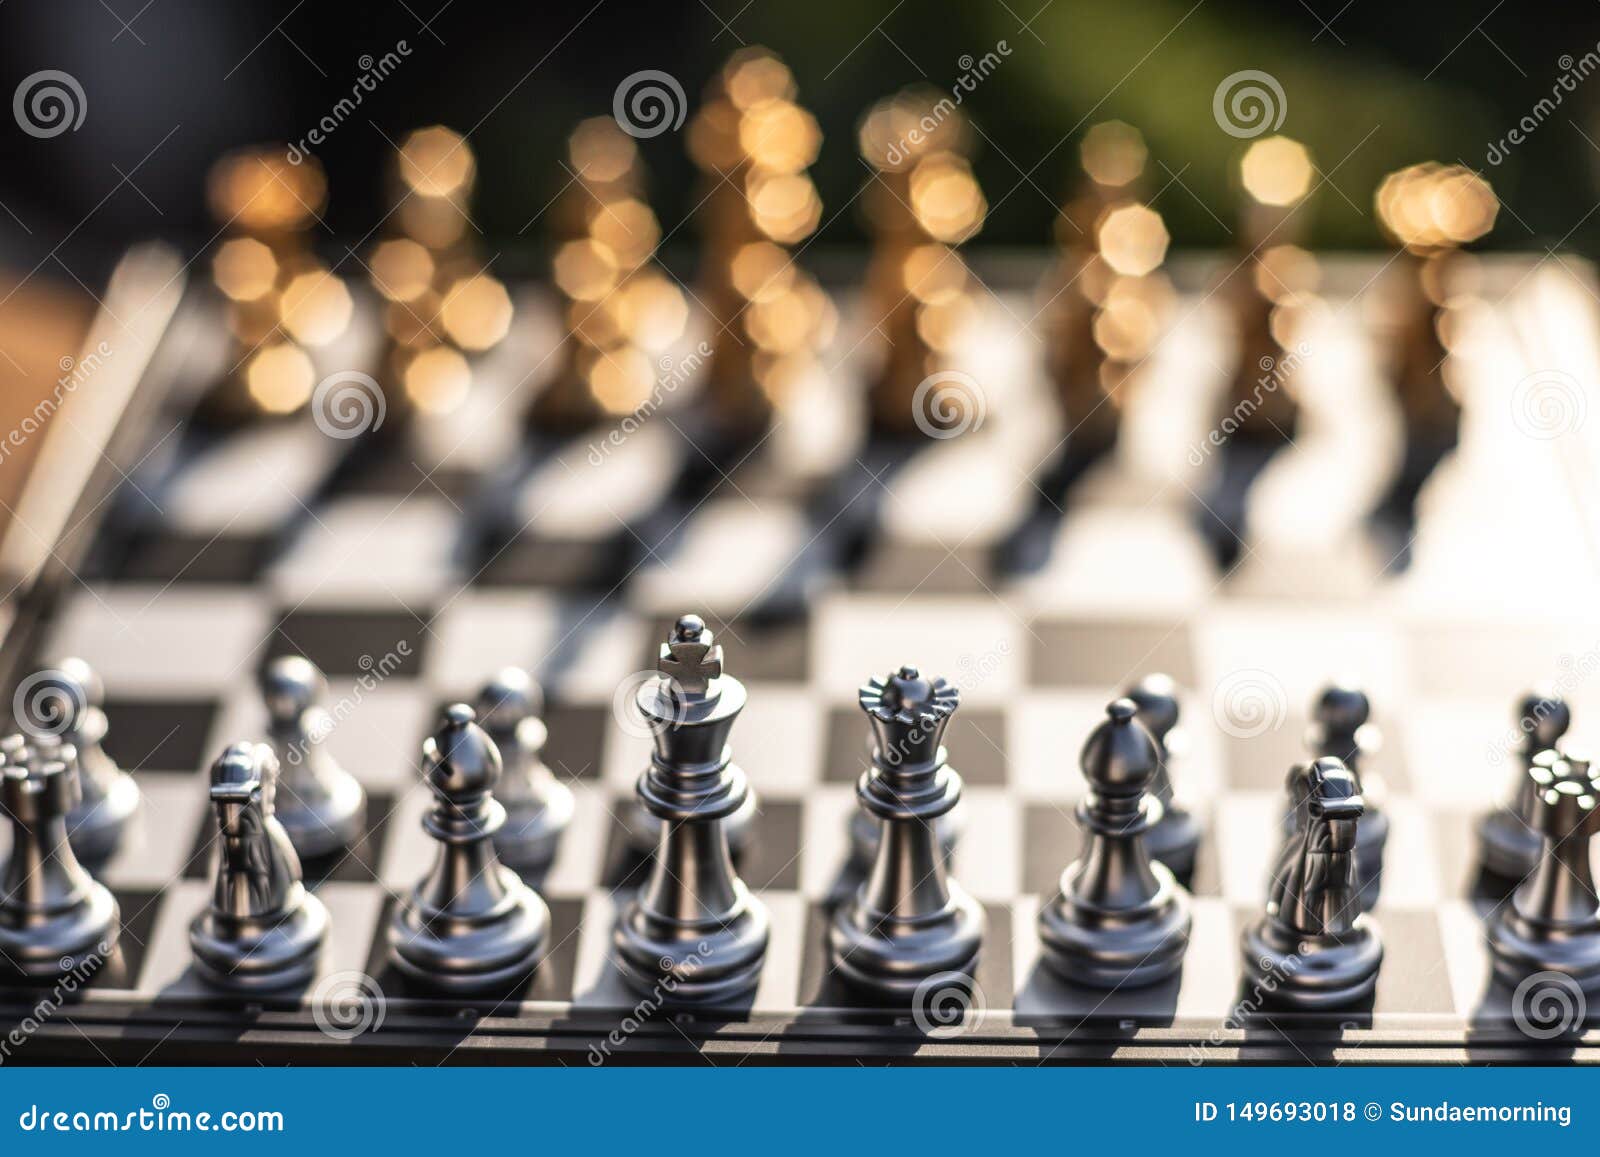 Conceito de negócio de competição de jogo de xadrez lutando e enfrentando  problemas